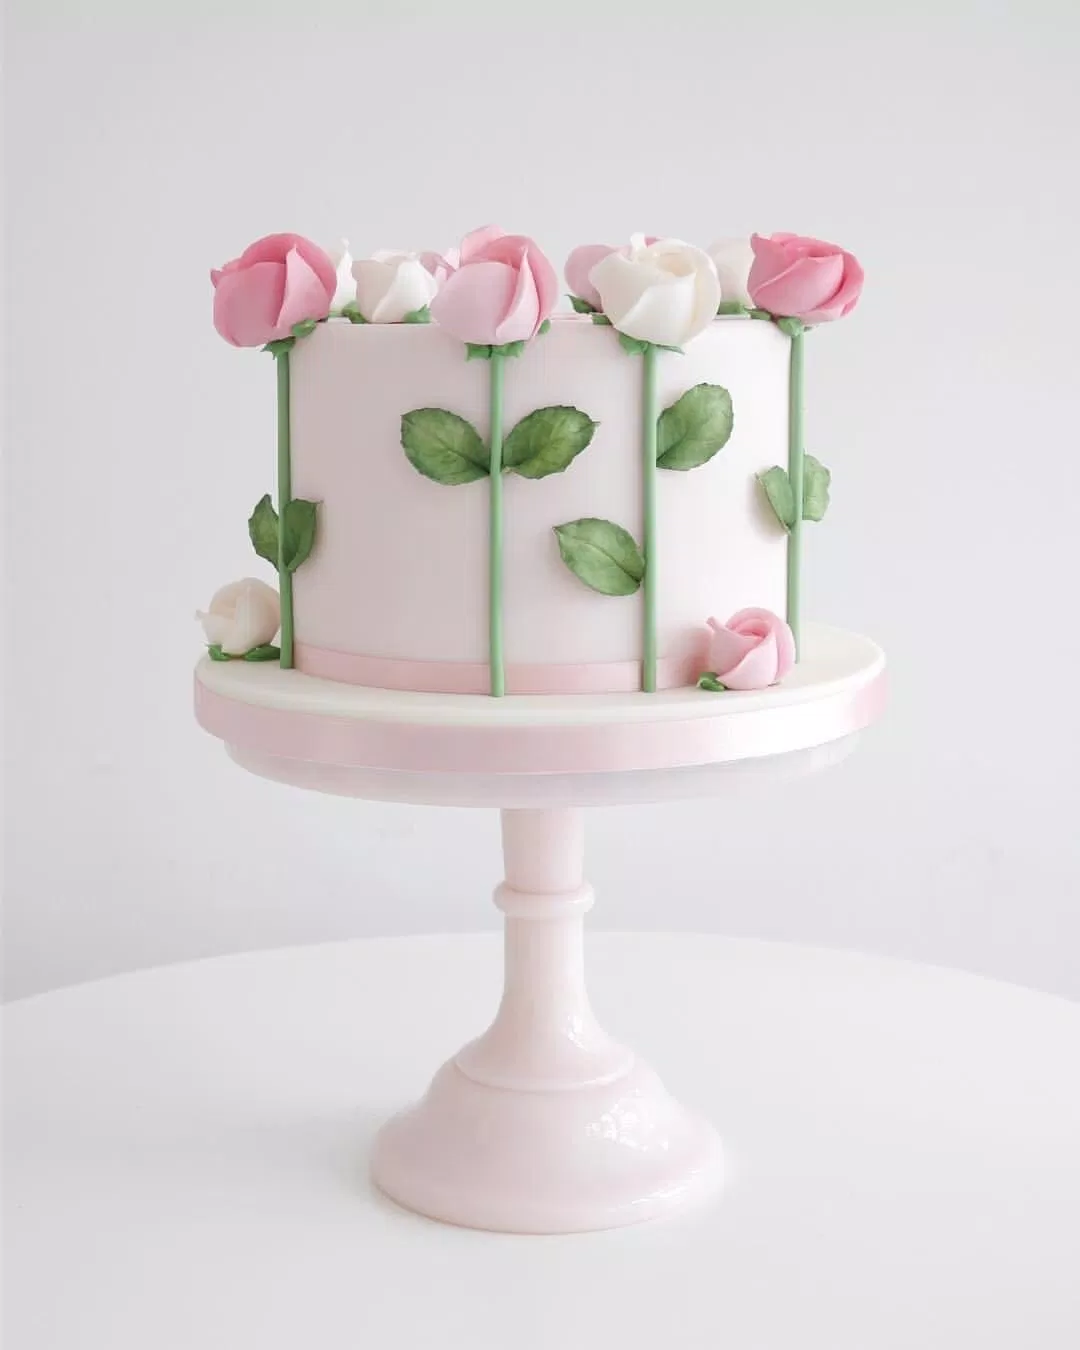 Bánh sinh nhật với cả vườn hoa hồng cực xinh (Ảnh: internet)